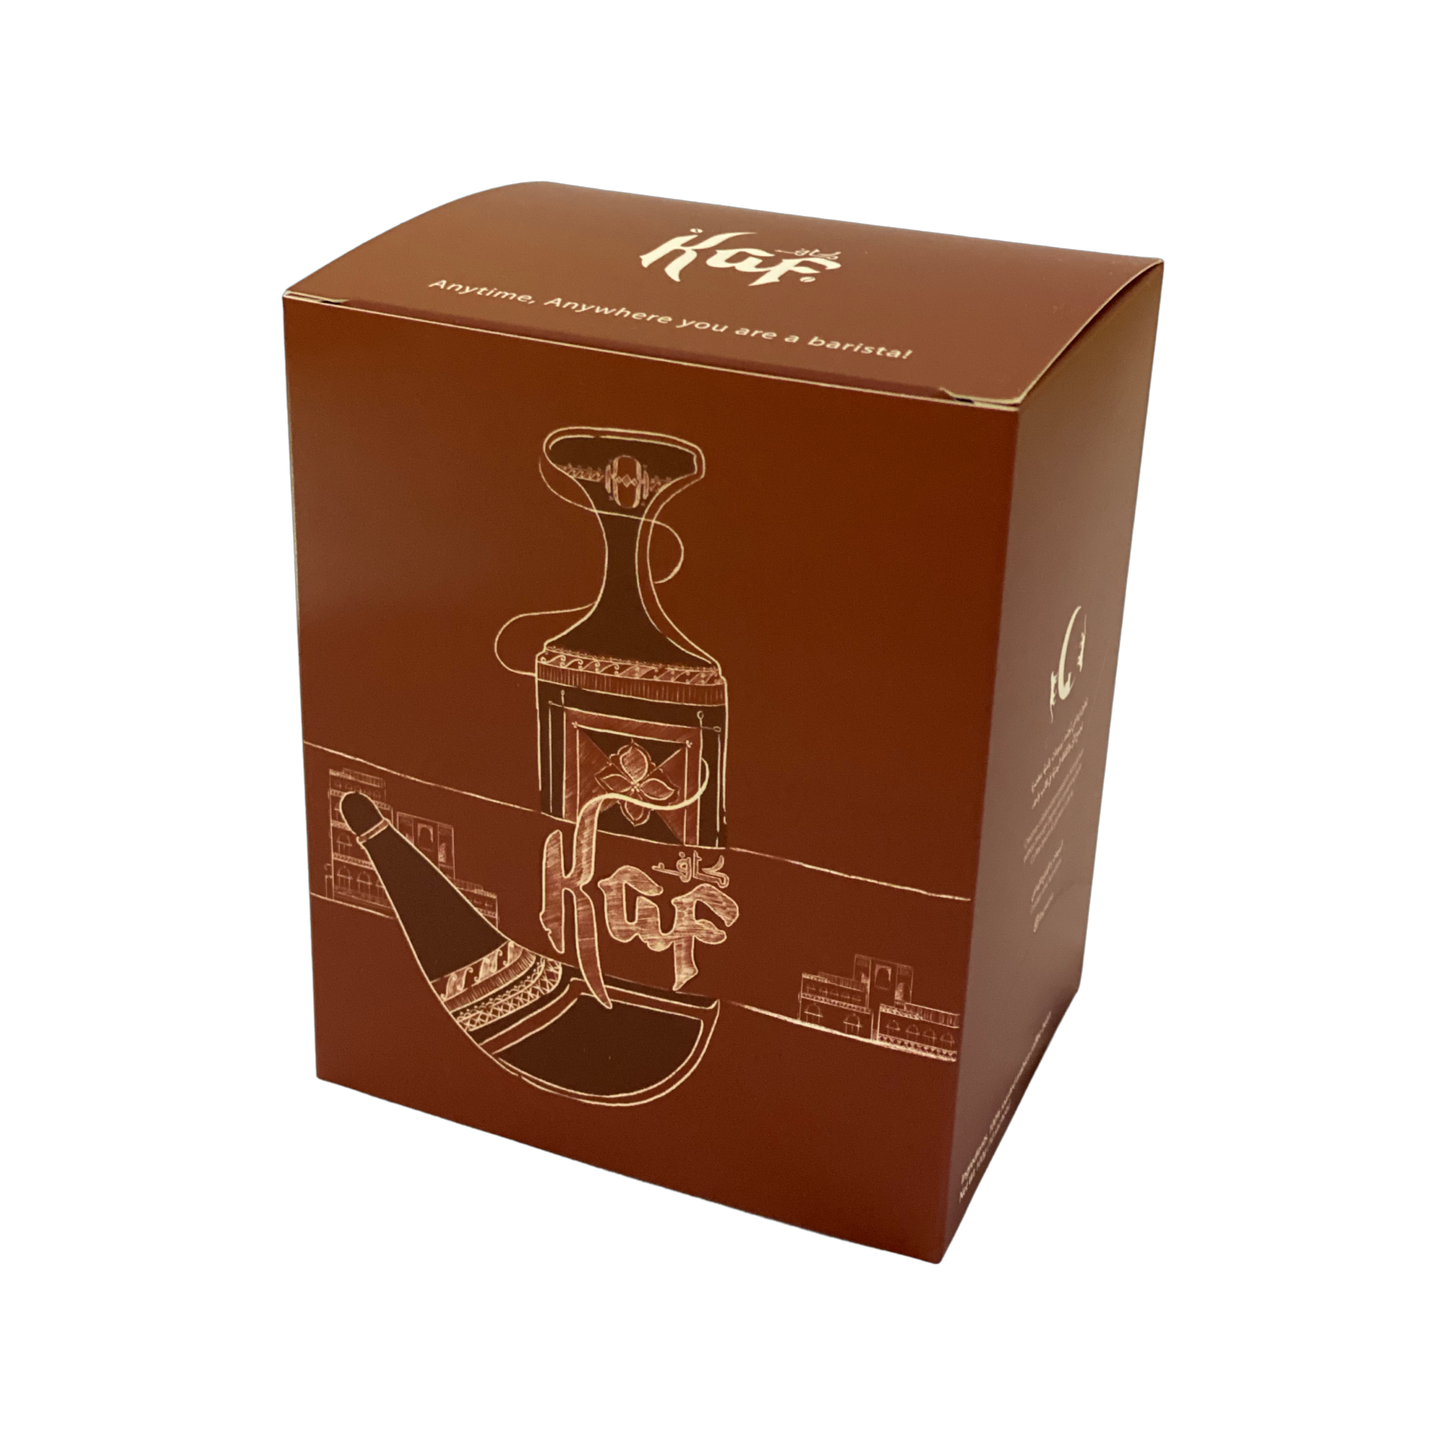 Drip Coffee Bag - Yemen Al Hayma - Box of 10 sachets